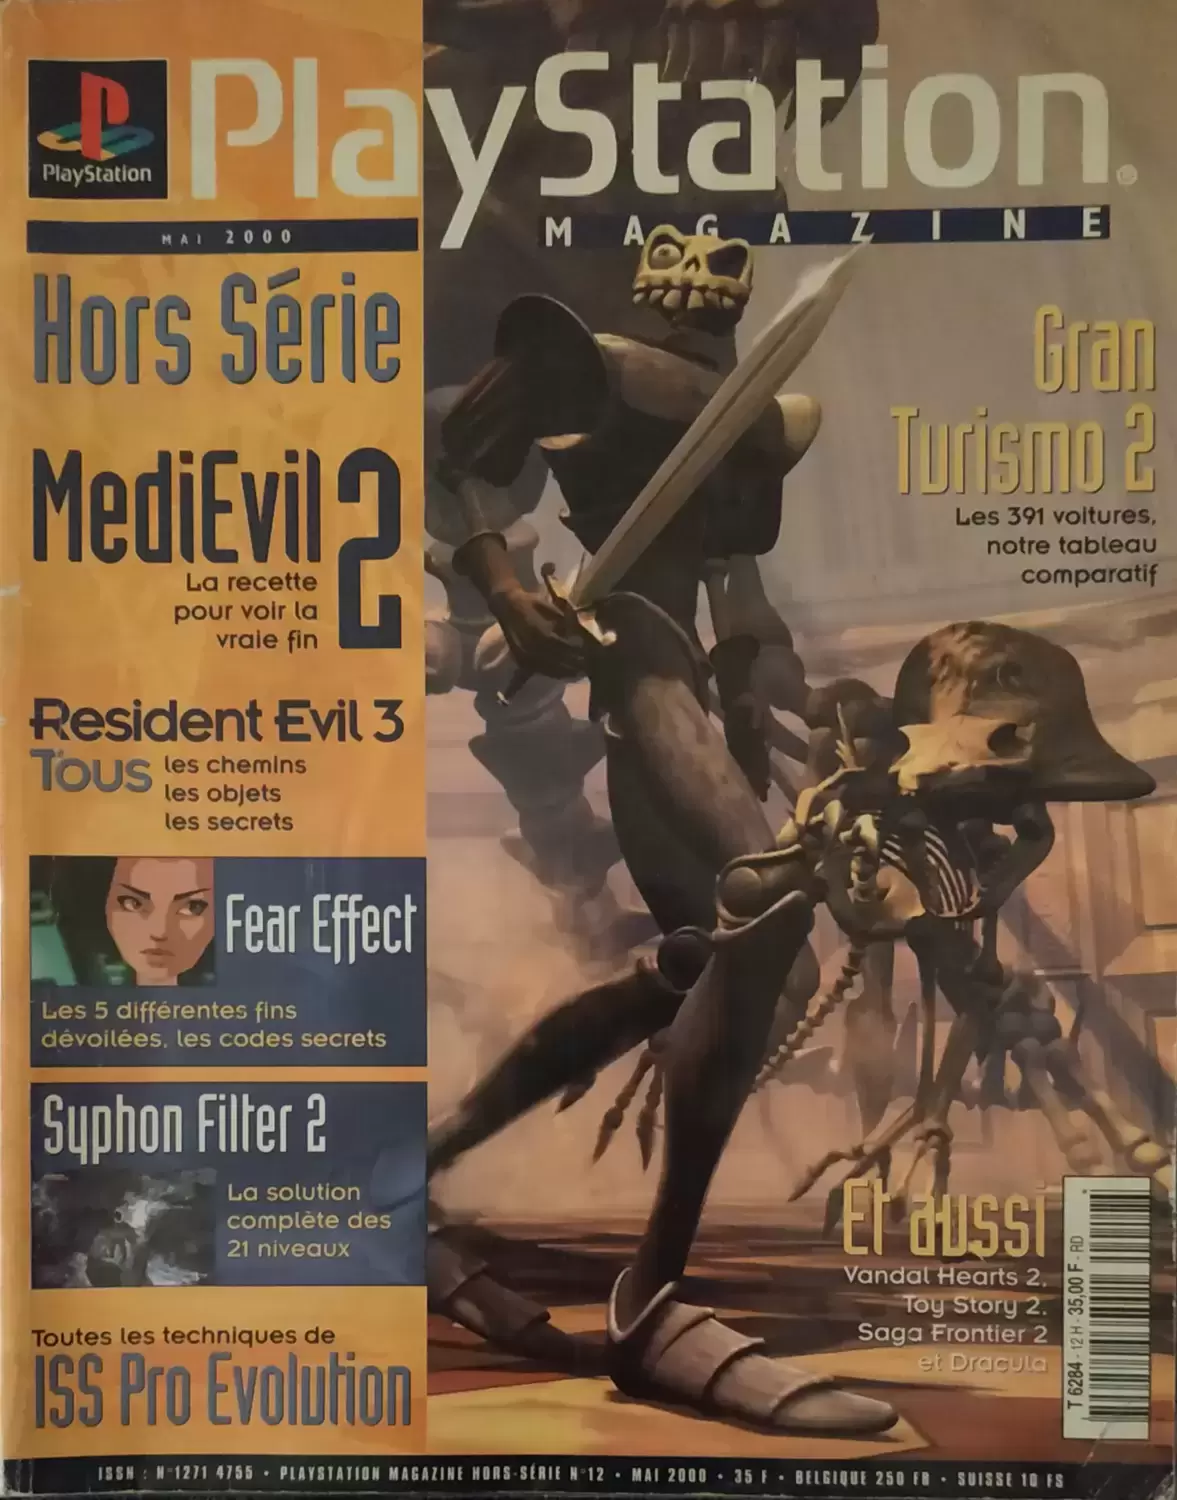 Playstation Magazine - Playstation Magazine Numéro Hors Serie 12